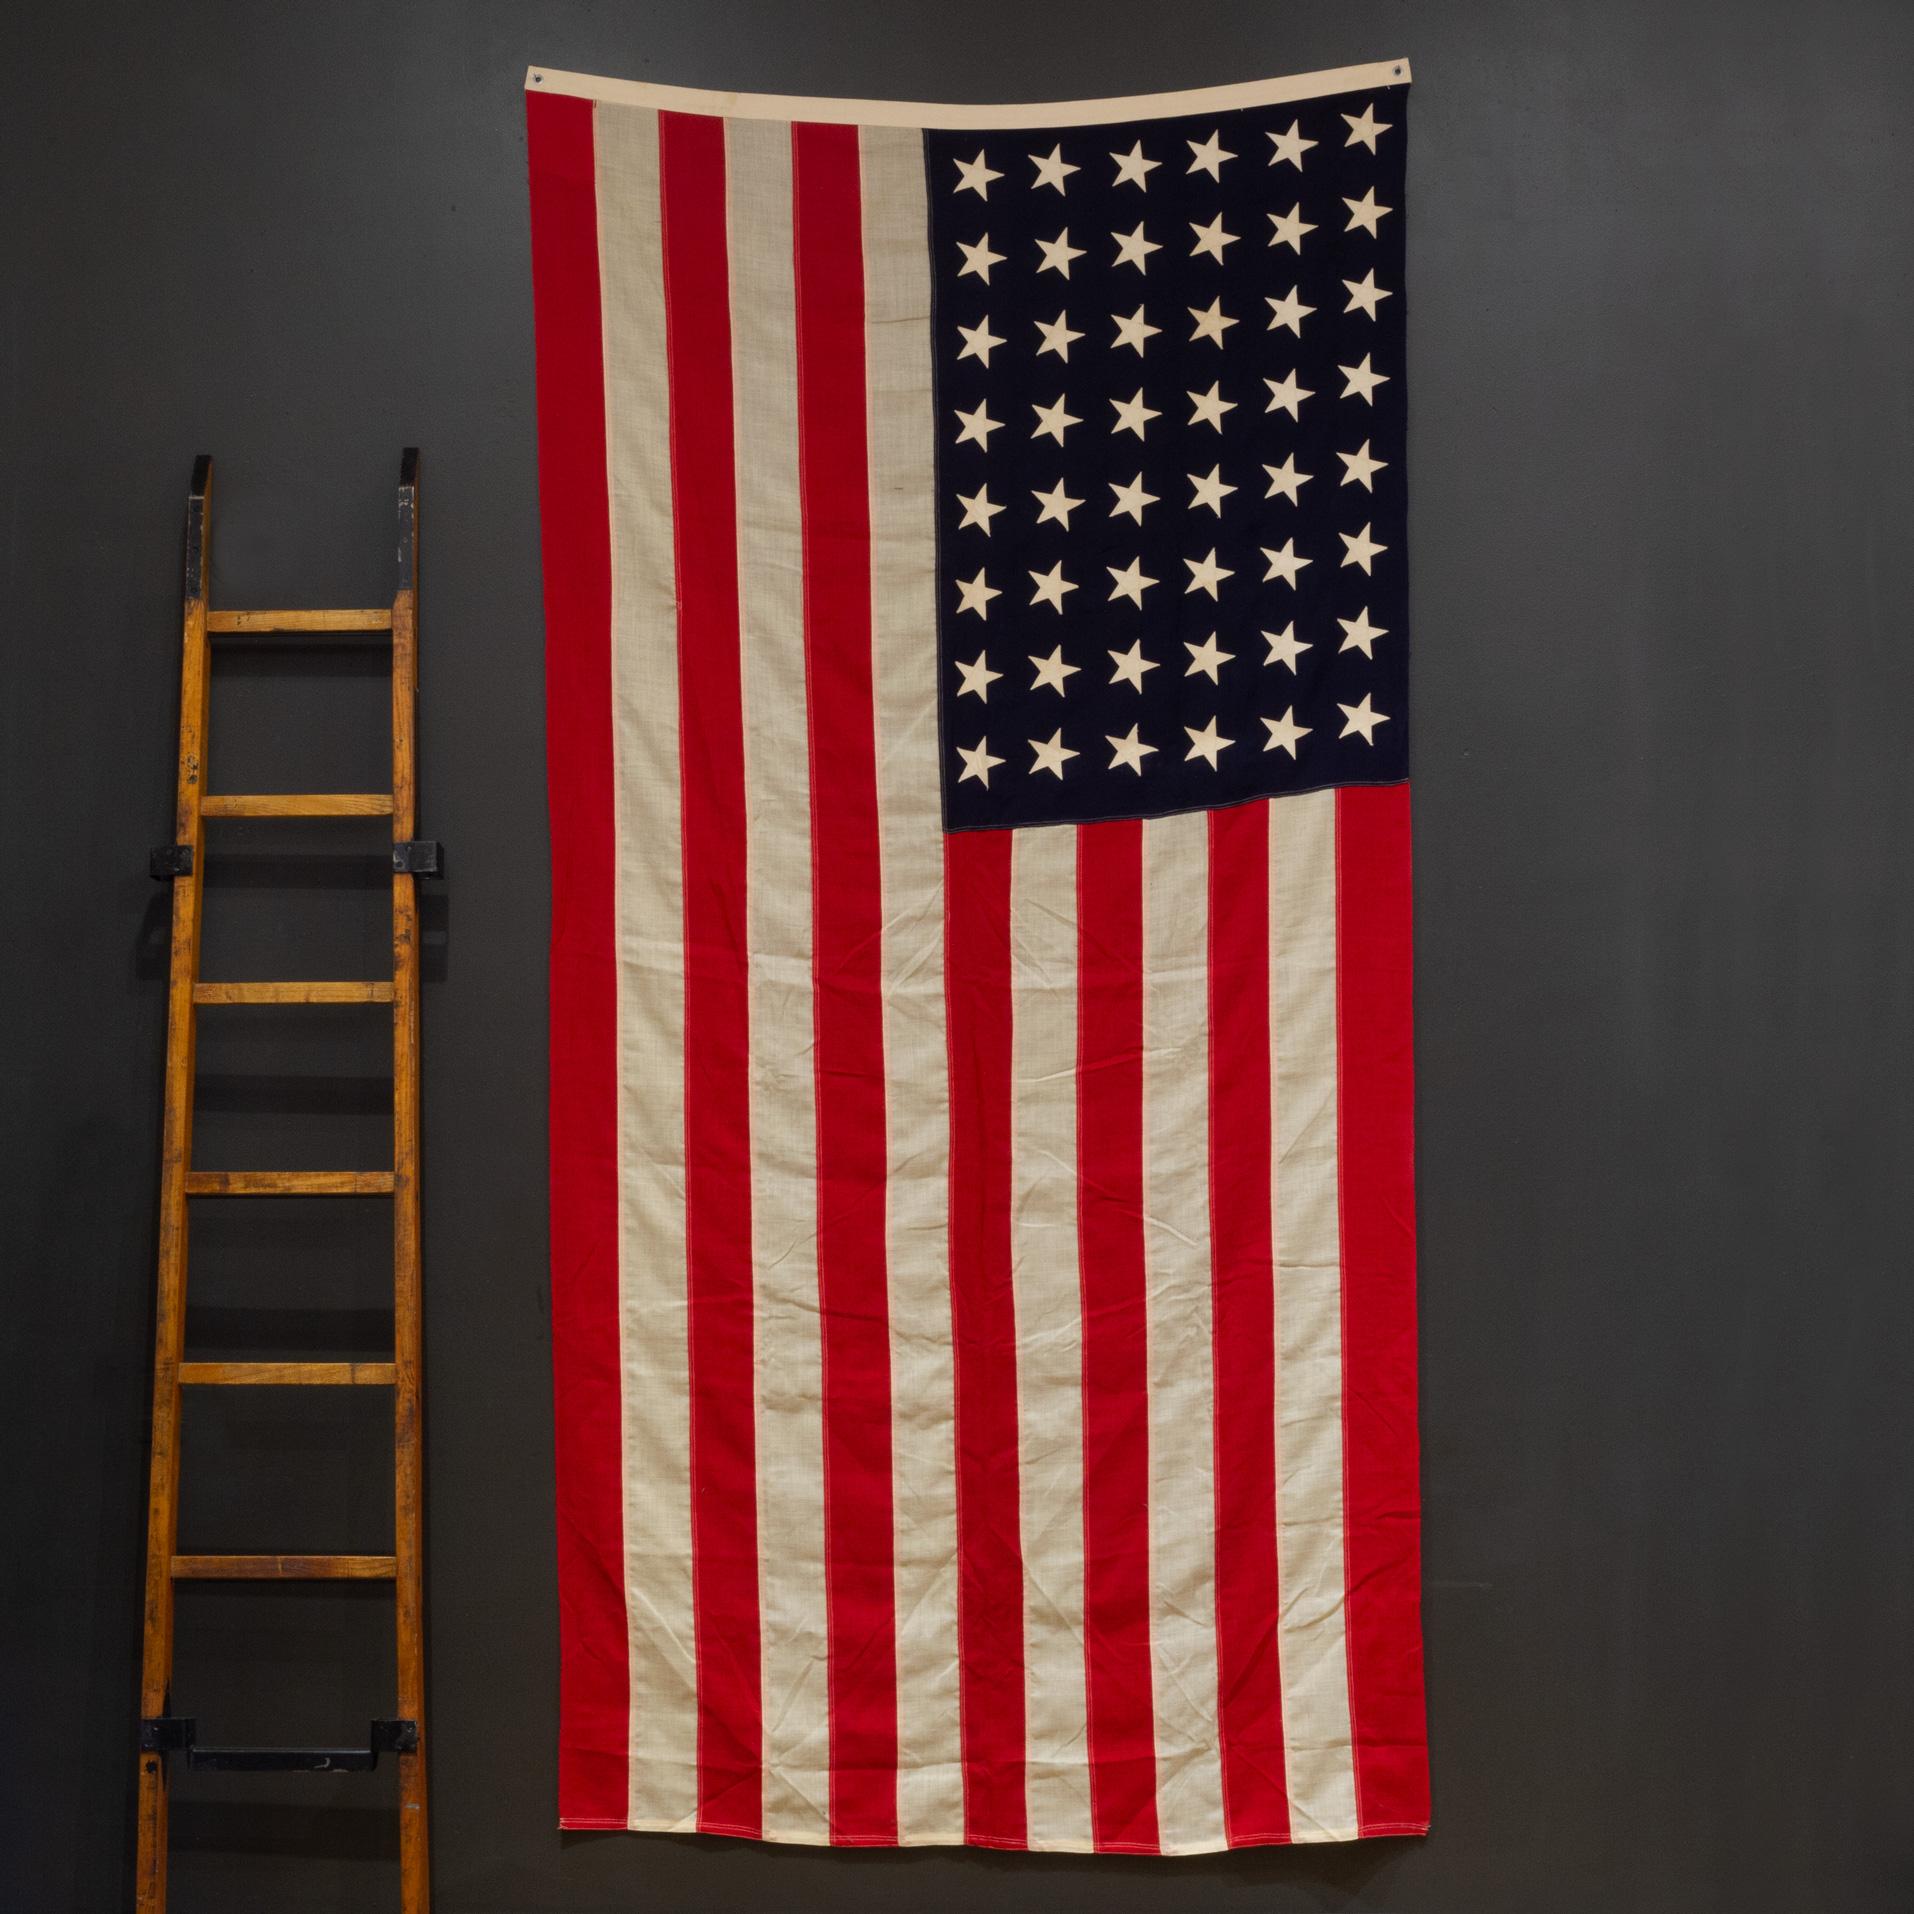 À PROPOS DE

Un grand drapeau américain en laine, composé de 48 étoiles et rayures cousues à la main. Il est en bon état et possède des œillets en laiton pour le suspendre.

    CREATEUR Inconnu.
    A.I.C. c.1940-1950.
    MATÉRIAUX ET TECHNIQUES